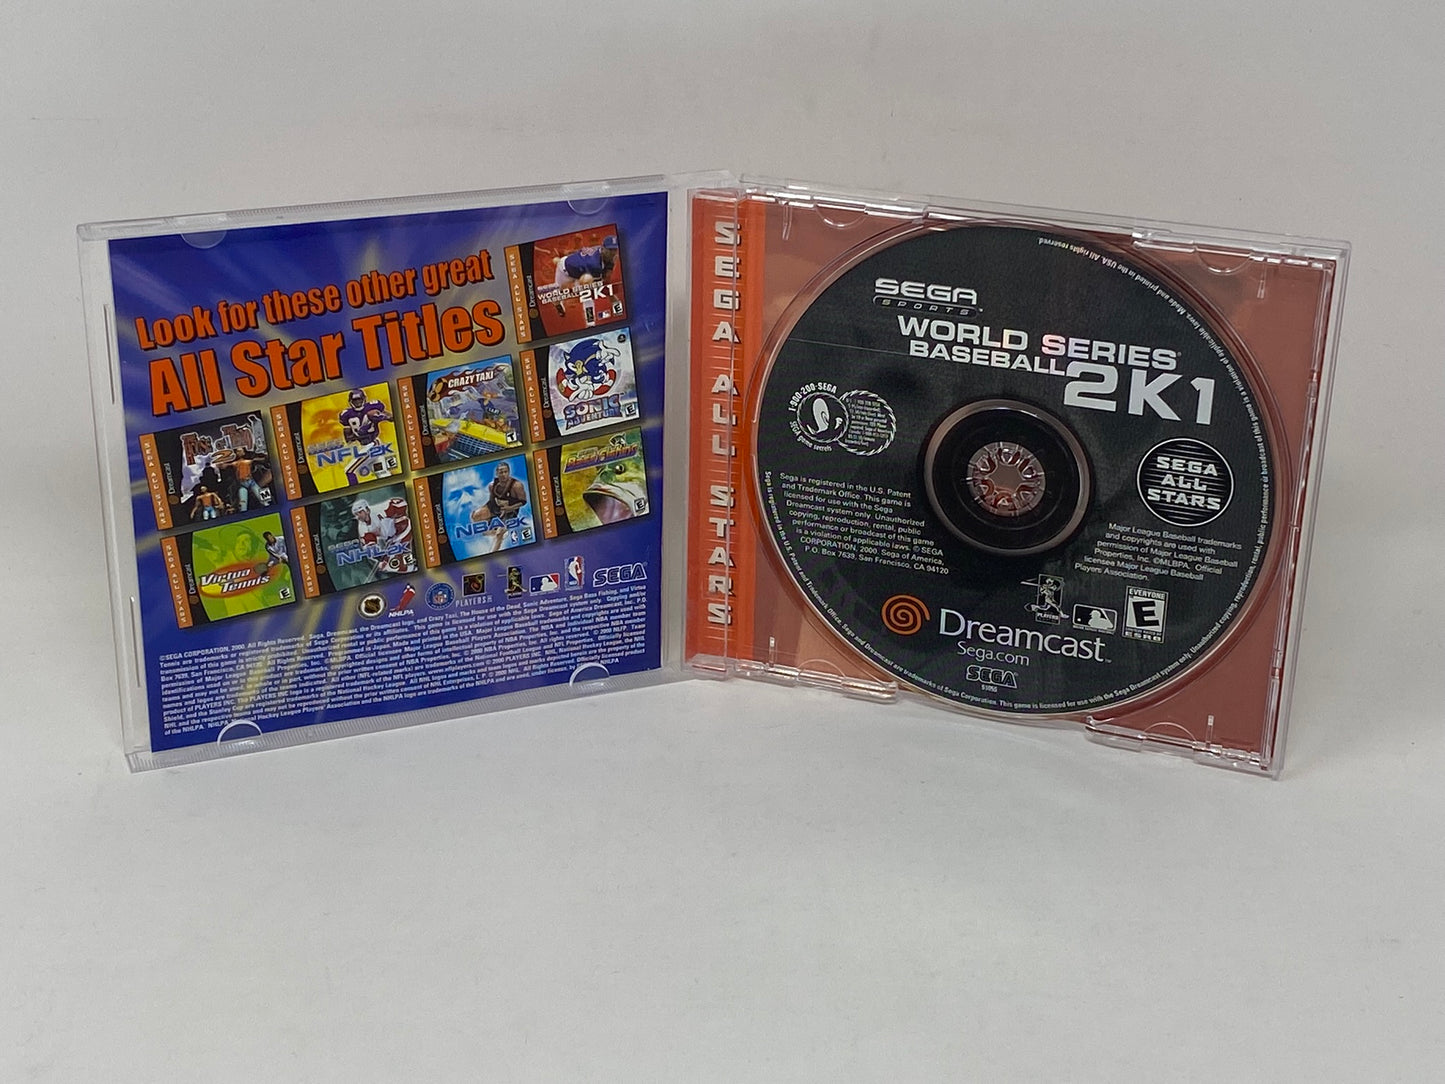 Sega Dreamcast - World Series Baseball 2K1 (Sega All Stars)